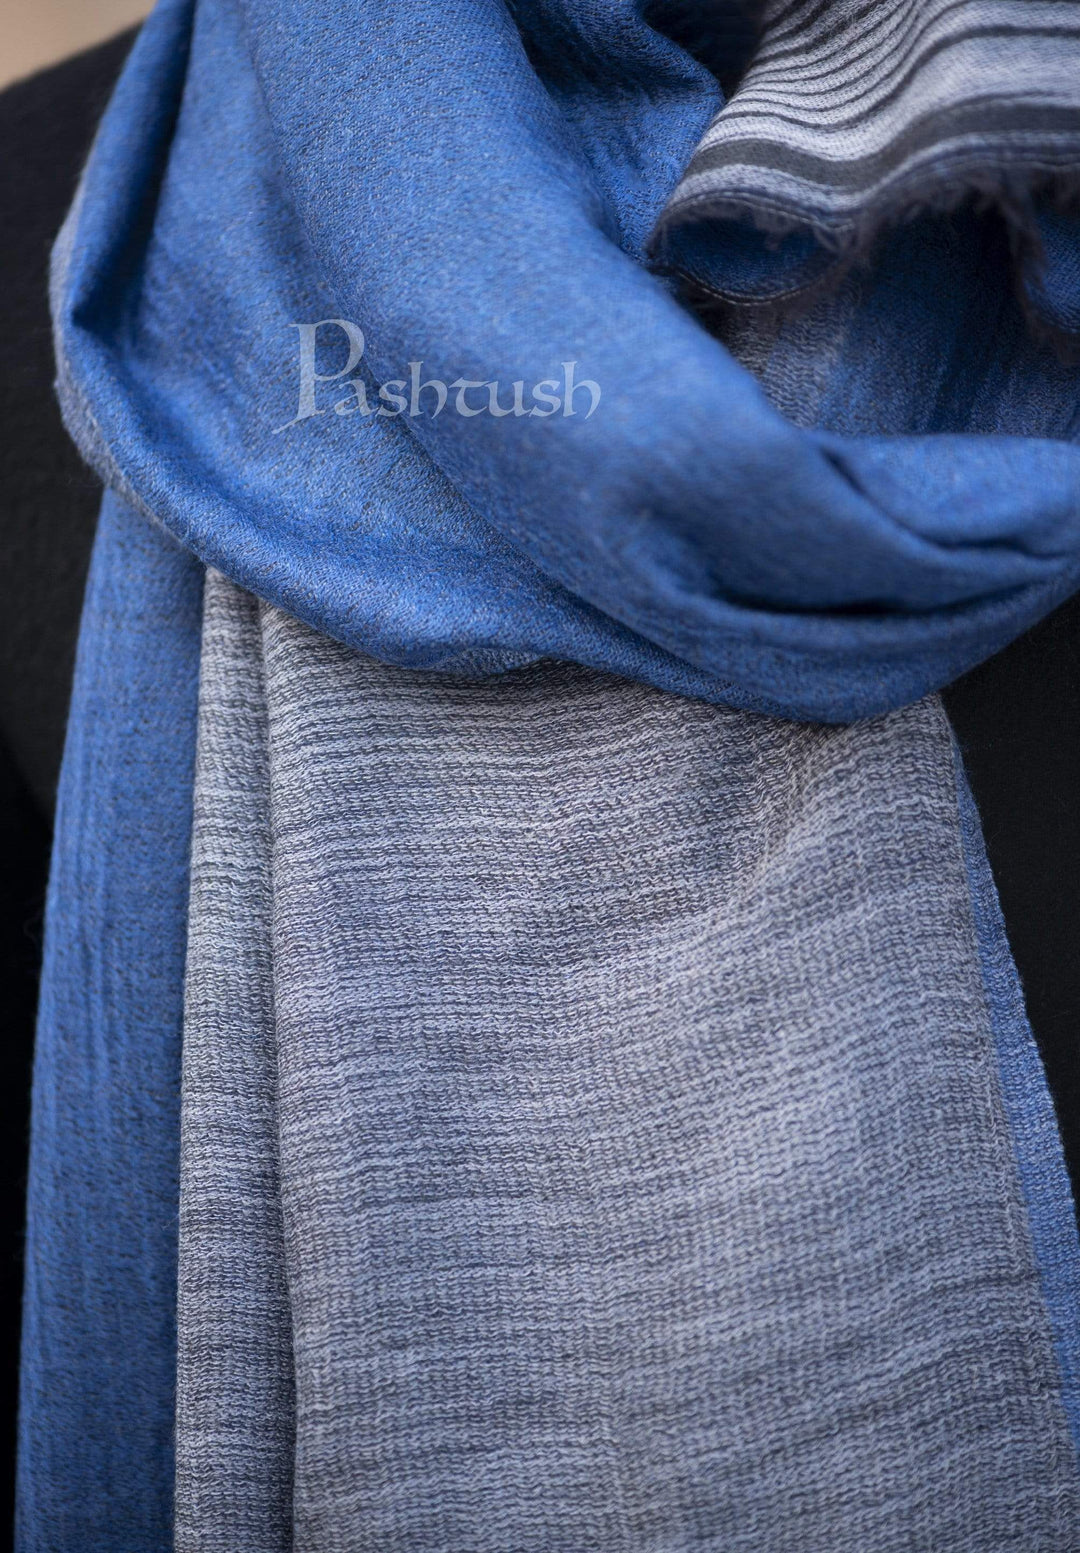 Pashtush India 70x200 Pashtush Mens Cashmere Wool Scarf, Reversible, Twin Weave, Azure Blue